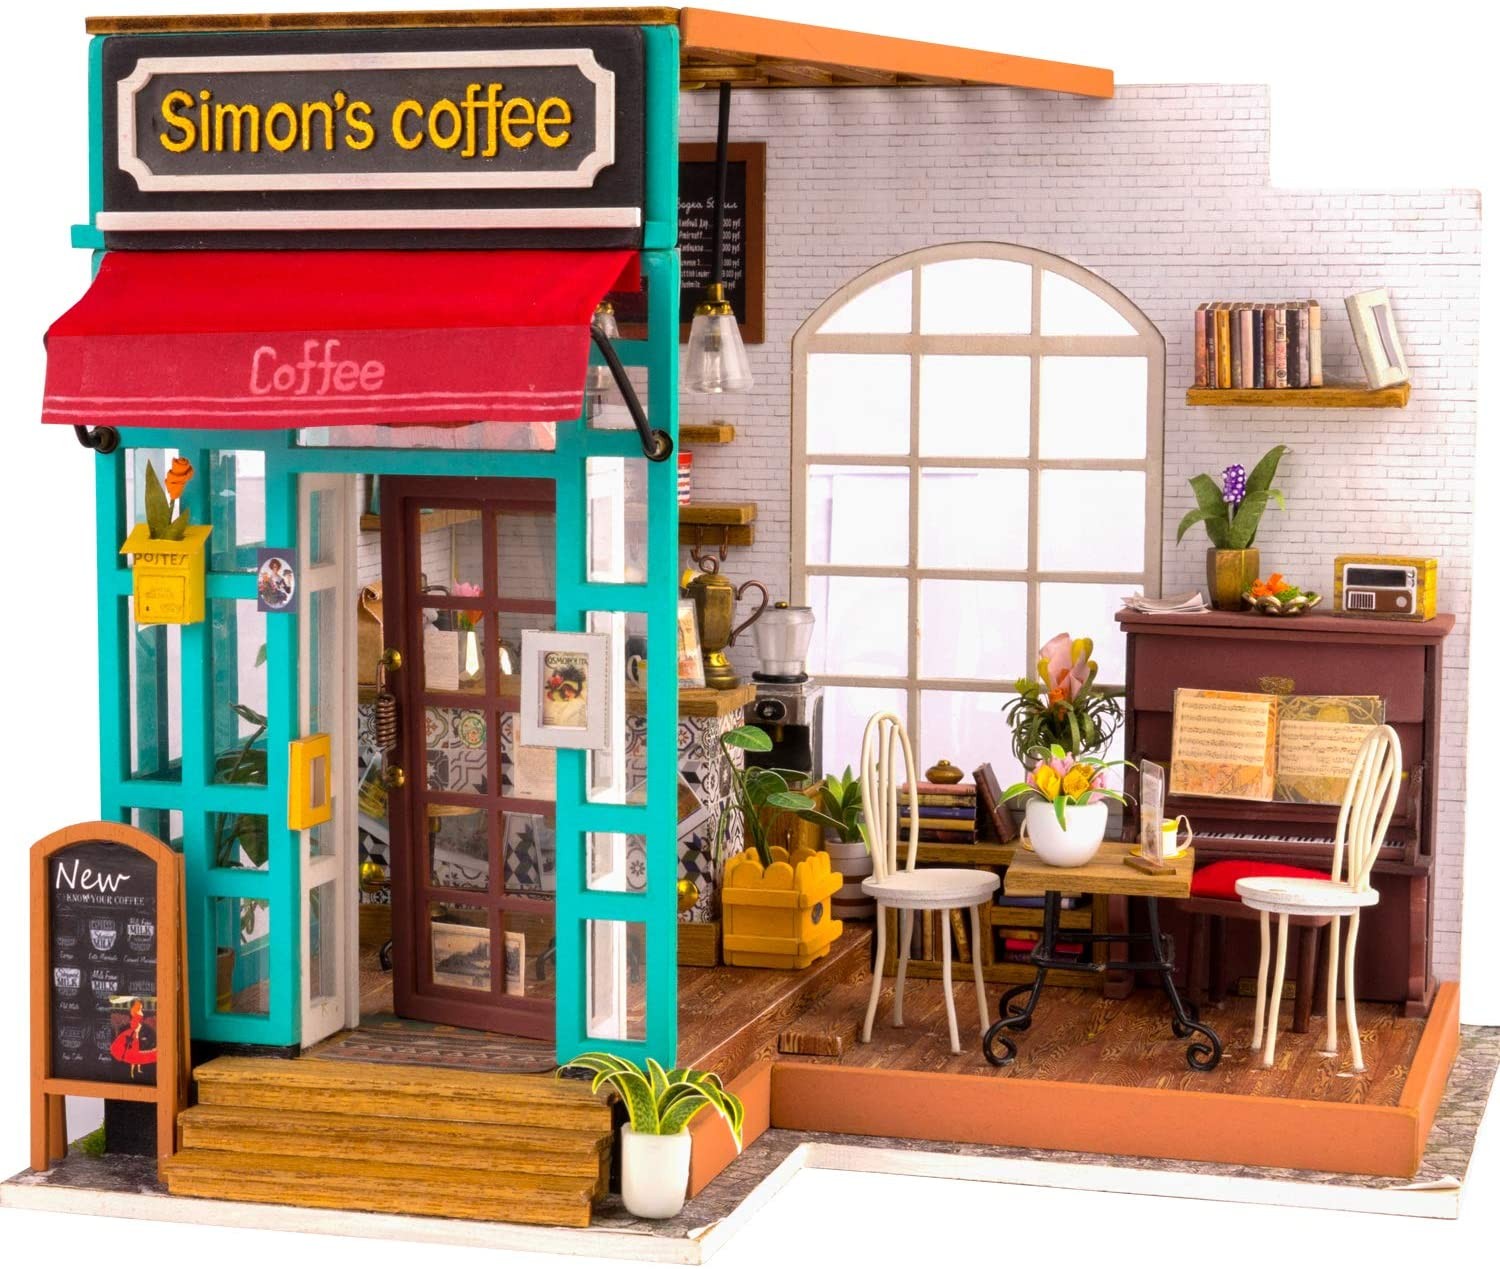 Simon's Coffee (Maqueta)